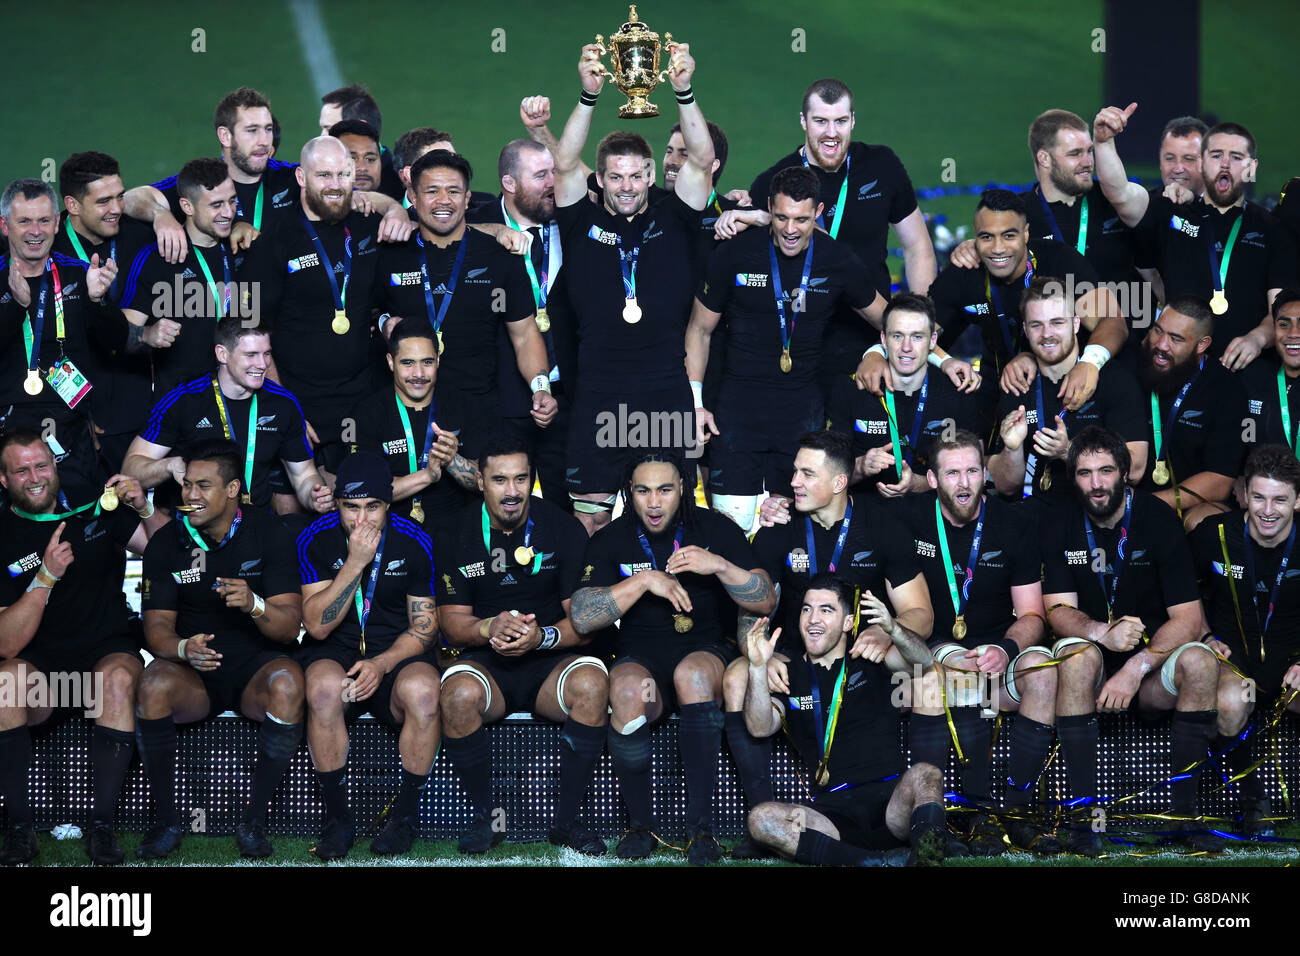 Rugby Union - coupe du monde de Rugby 2015 - finale - Nouvelle-Zélande / Australie - Twickenham.Richie McCaw, de Nouvelle-Zélande, lève la coupe Webb Ellis lors de la finale de la coupe du monde de rugby à Twickenham, Londres. Banque D'Images